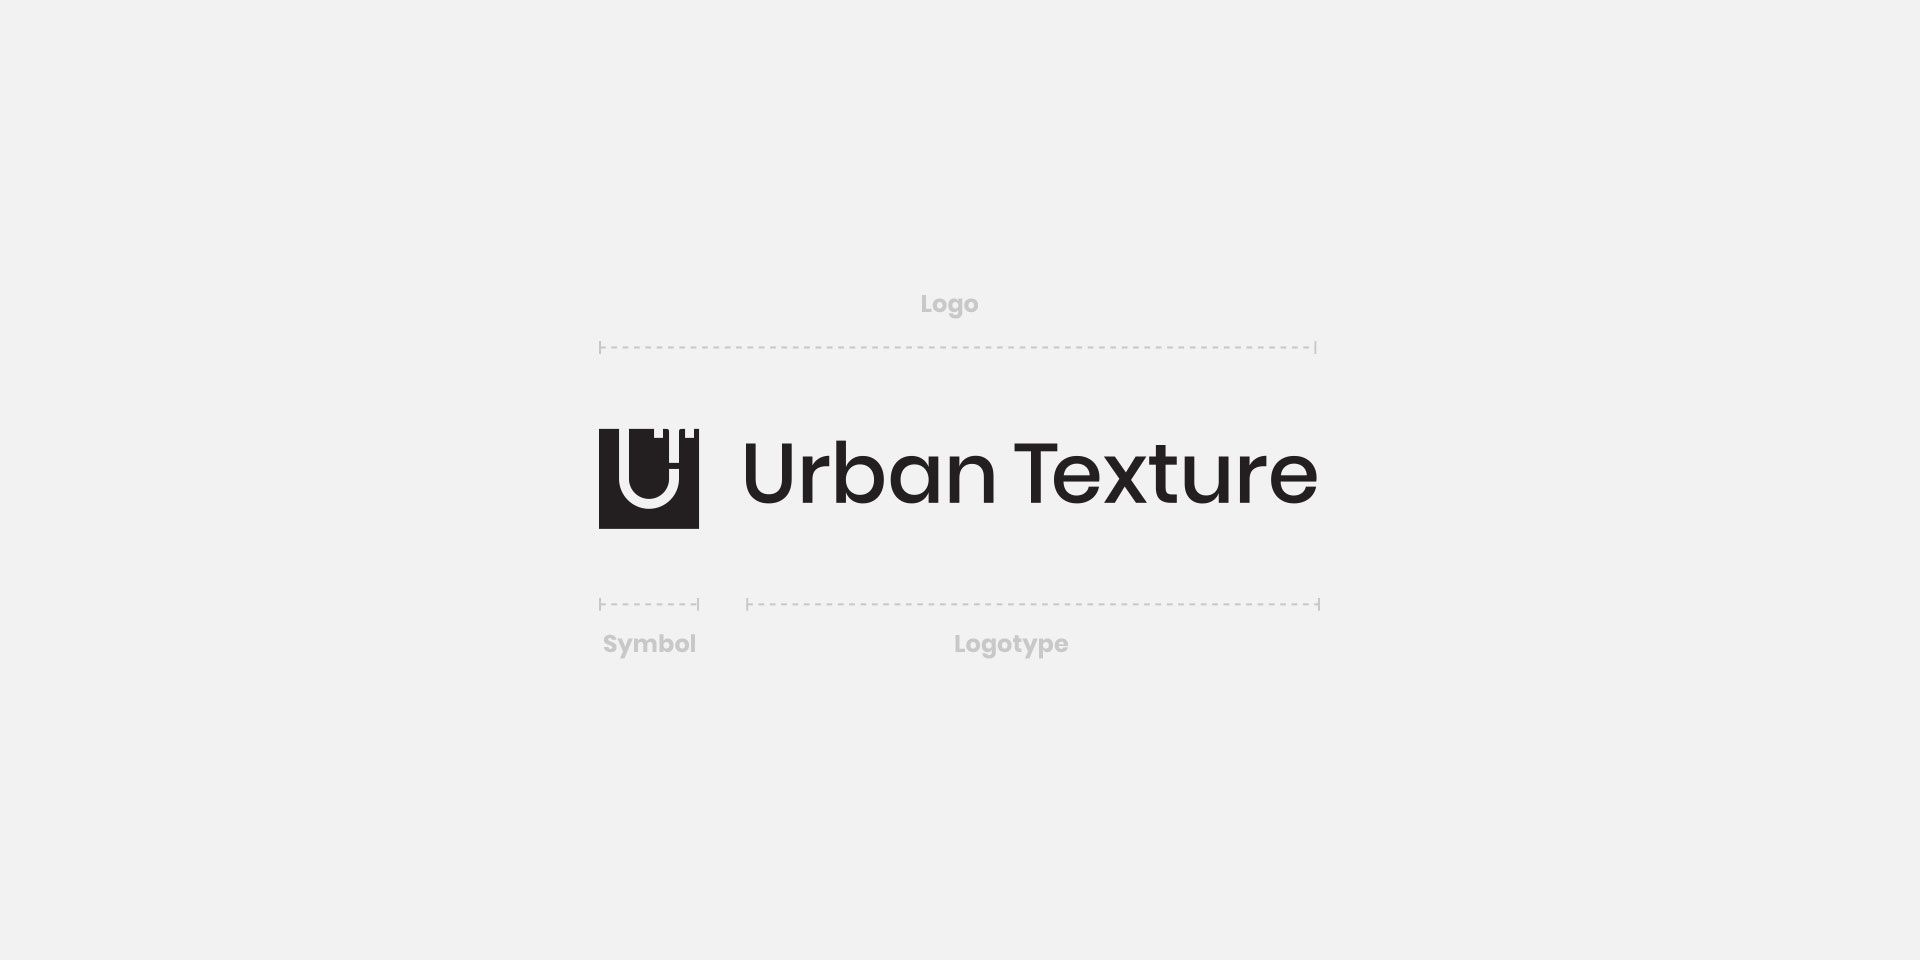 Urban Texture Architecture Design Studio India - Identity Design16